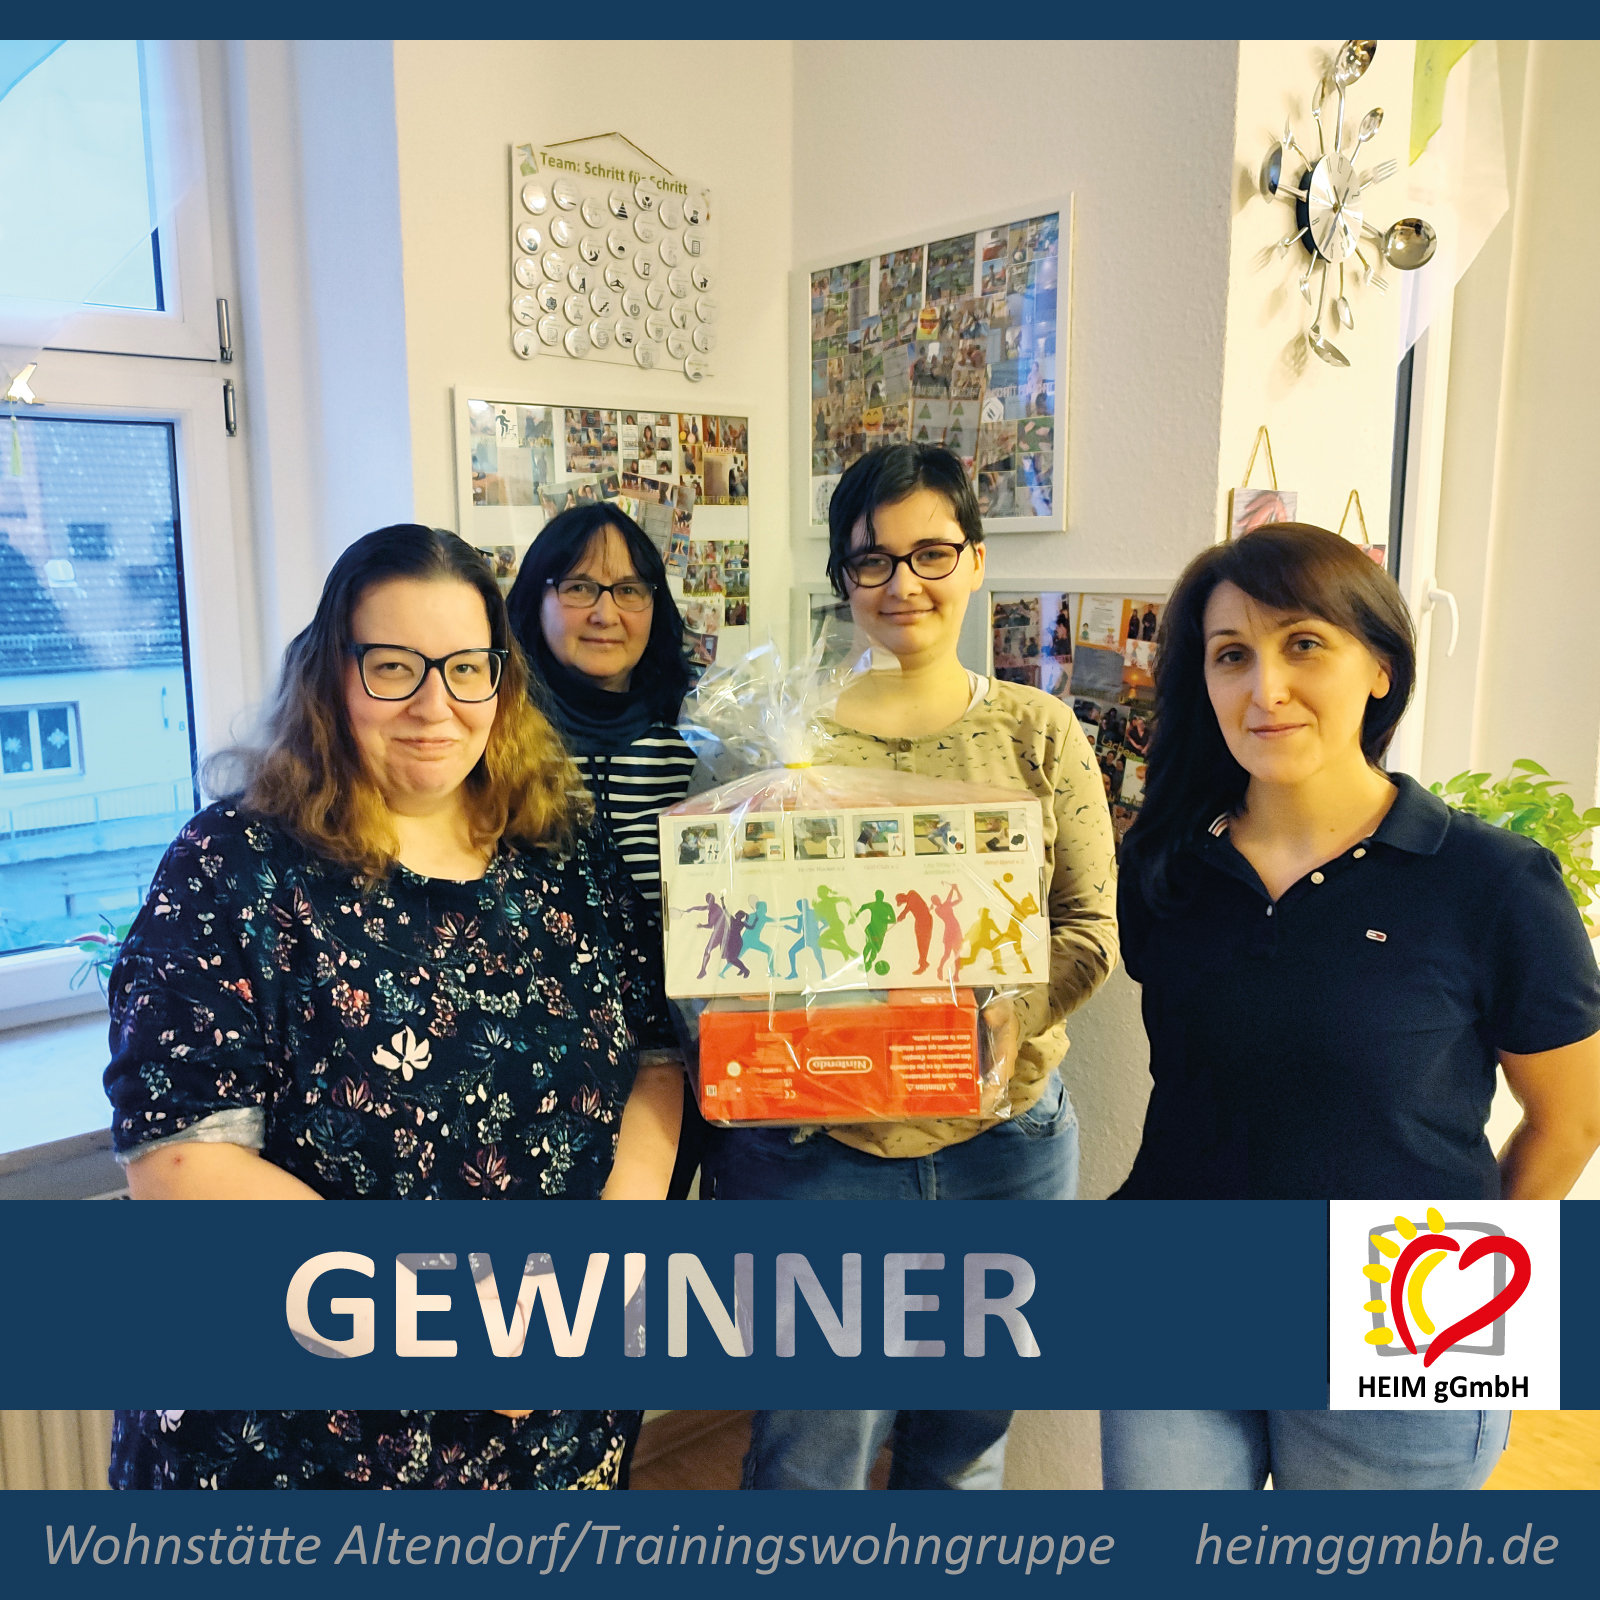 Das Team "Schritt für Schritt" aus der Trainingswohngruppe Altendorf ist Gewinner des abgeschlossenen „Jahr der Gesundheit“ in der HEIM gGmbH